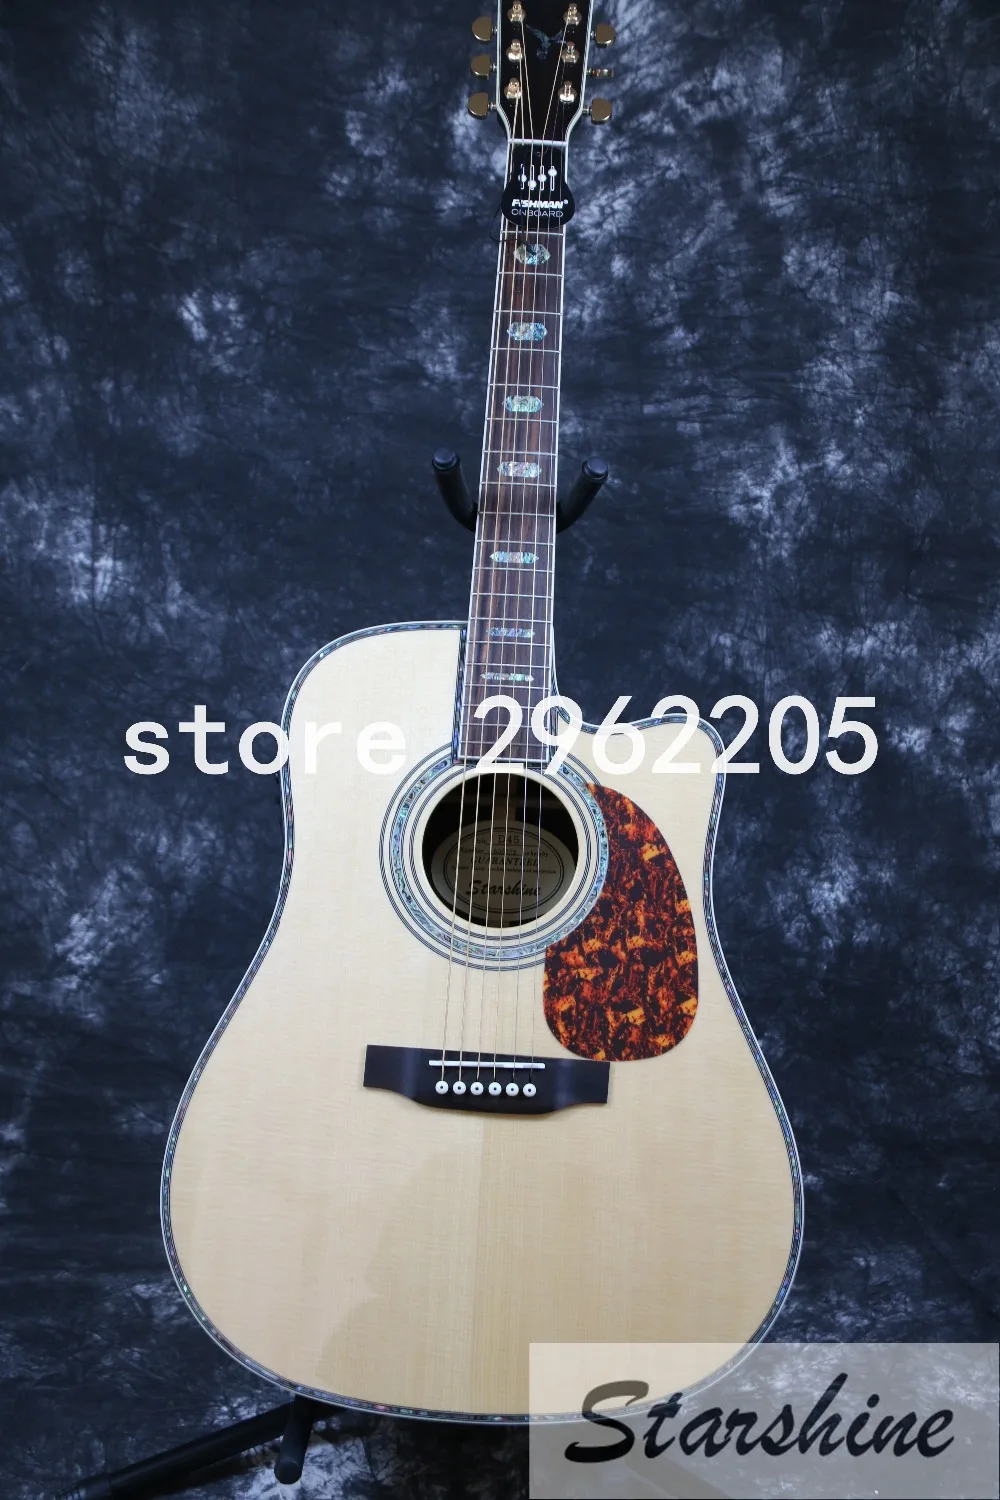 Inlock высокого качества Starshine SR-RS-45A 41 ''Акустическая гитара Grover тюнер Твердый Топ fishman EQ Золото Оборудование